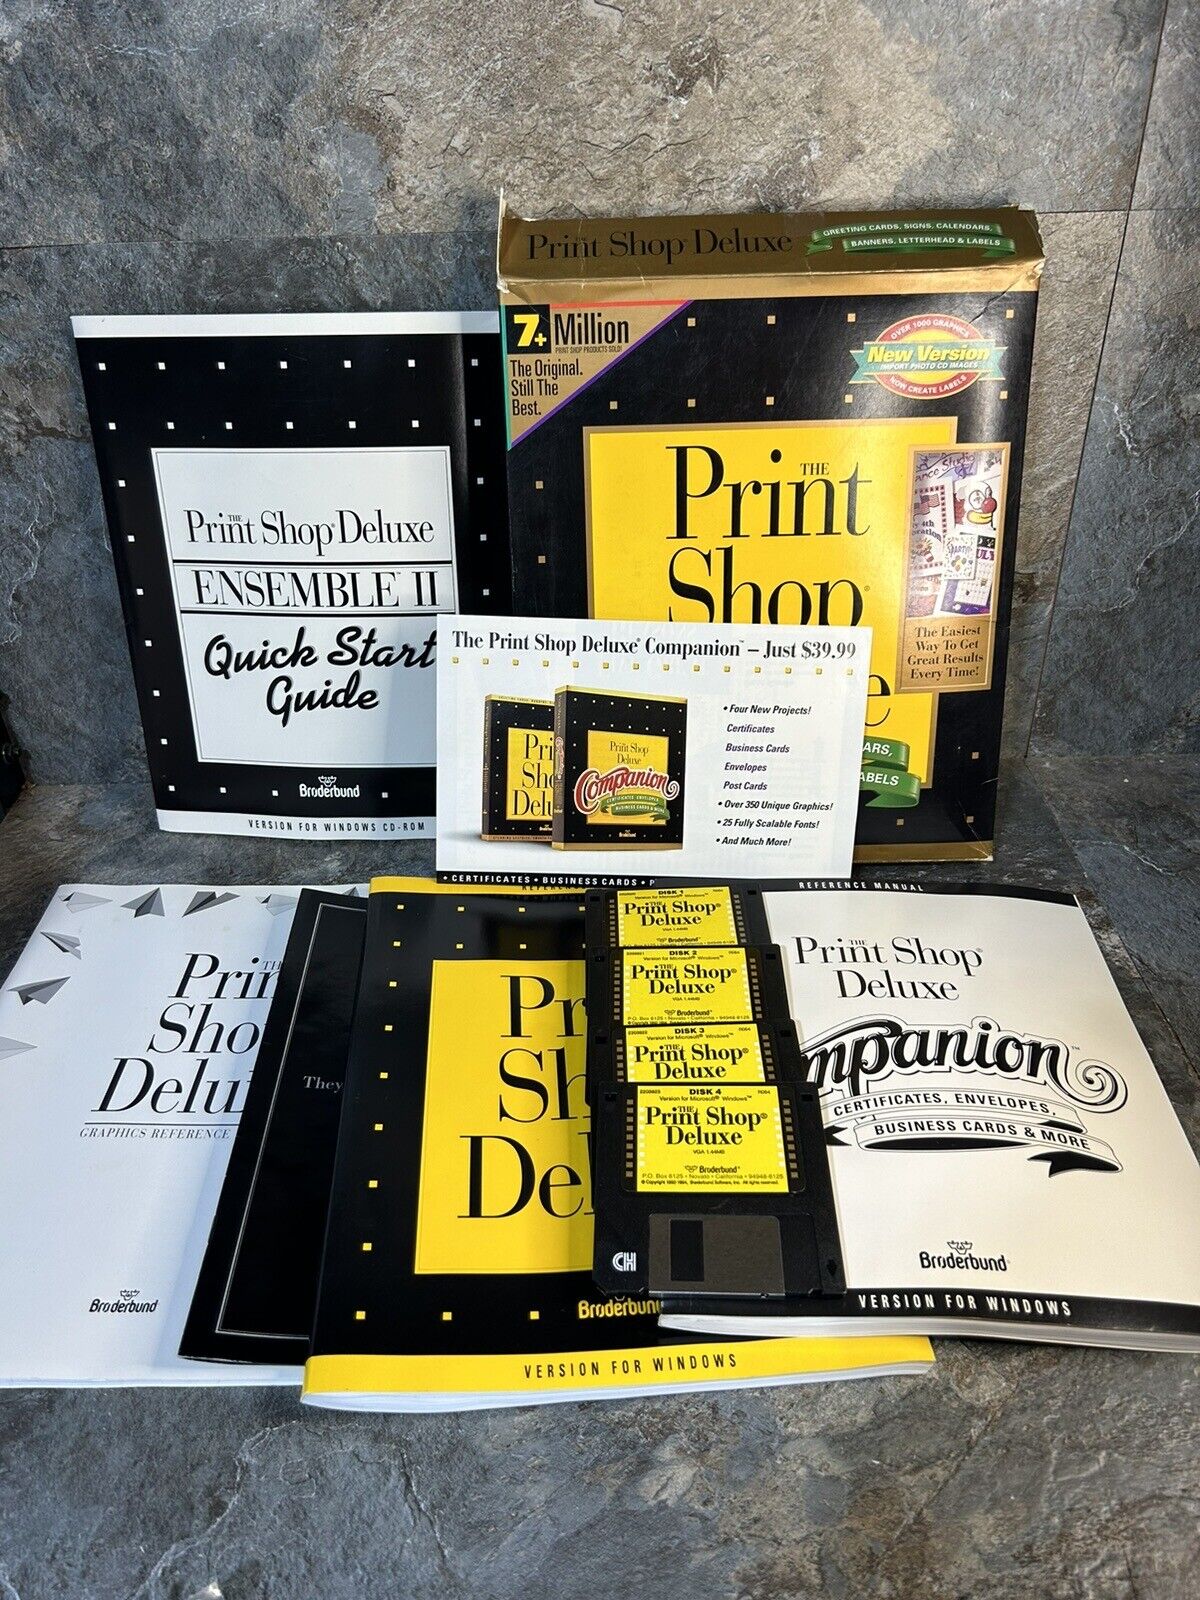 The Print Shop Deluxe Broderbund Windows IBM TANDY 1992 w/ 3.5” Floppy Disks